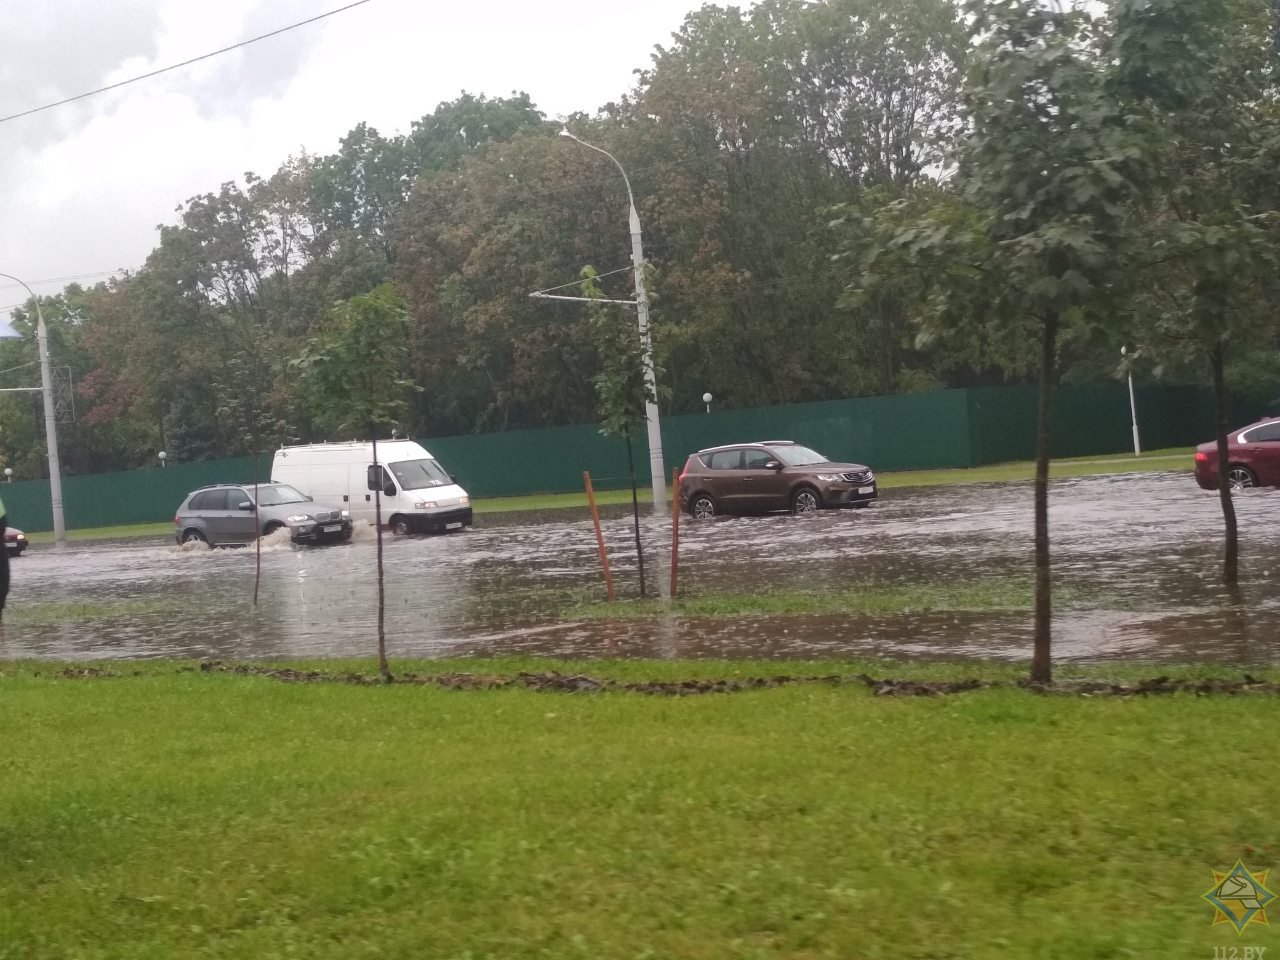 В Минске спасатели вытягивали автомобиль из лужи и откачивали воду из магазина